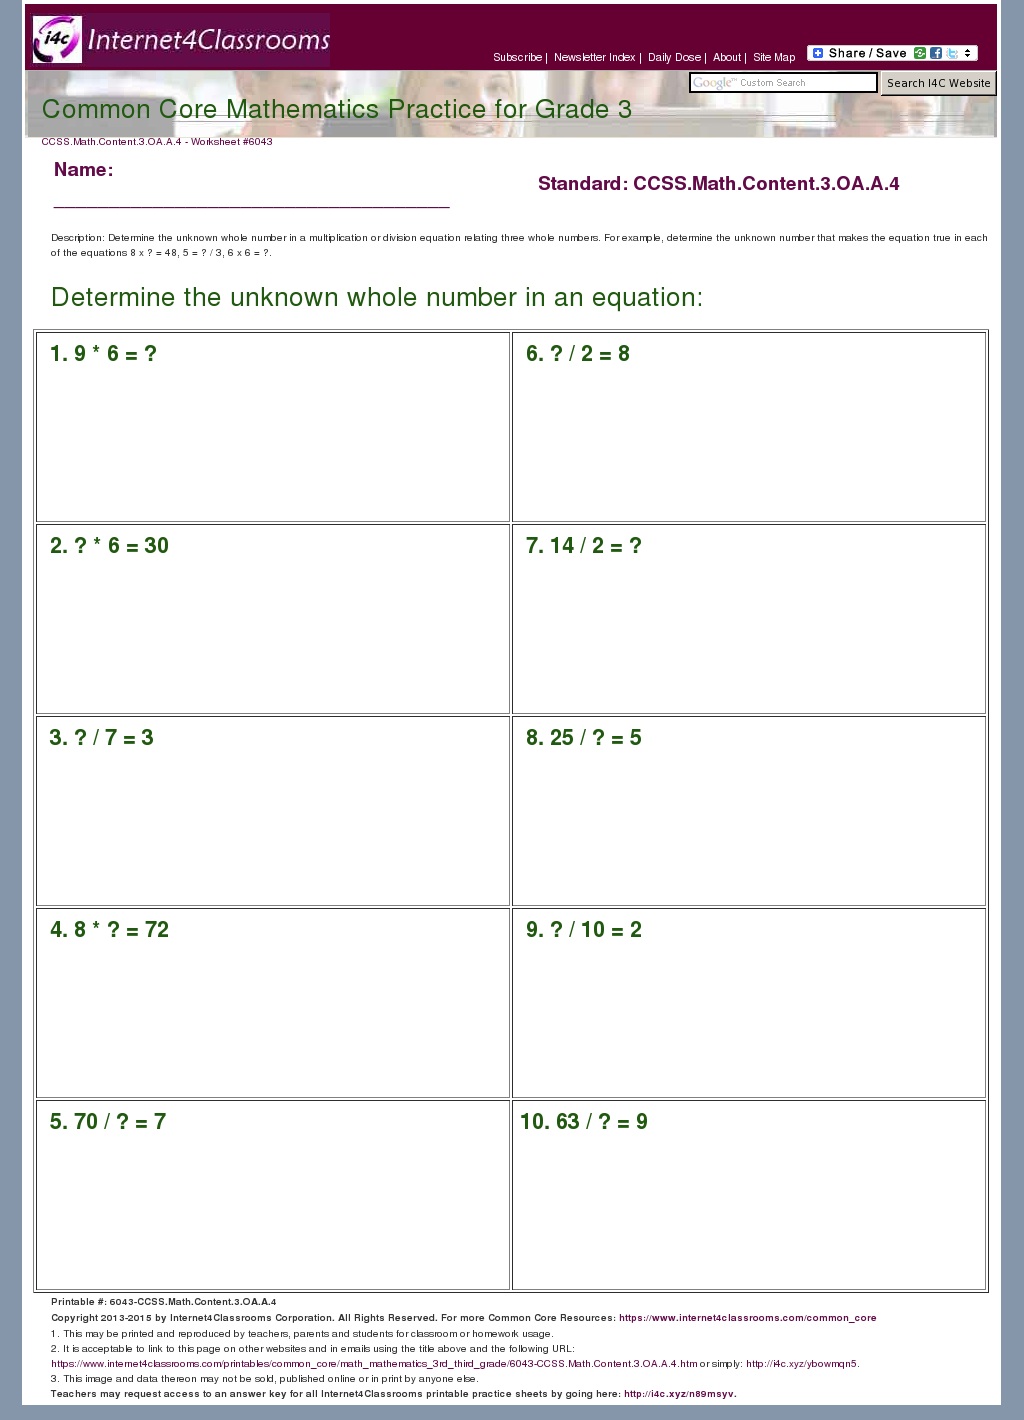 Description/Download - Worksheet #6043. CCSS.Math.Content.3.OA.A.4